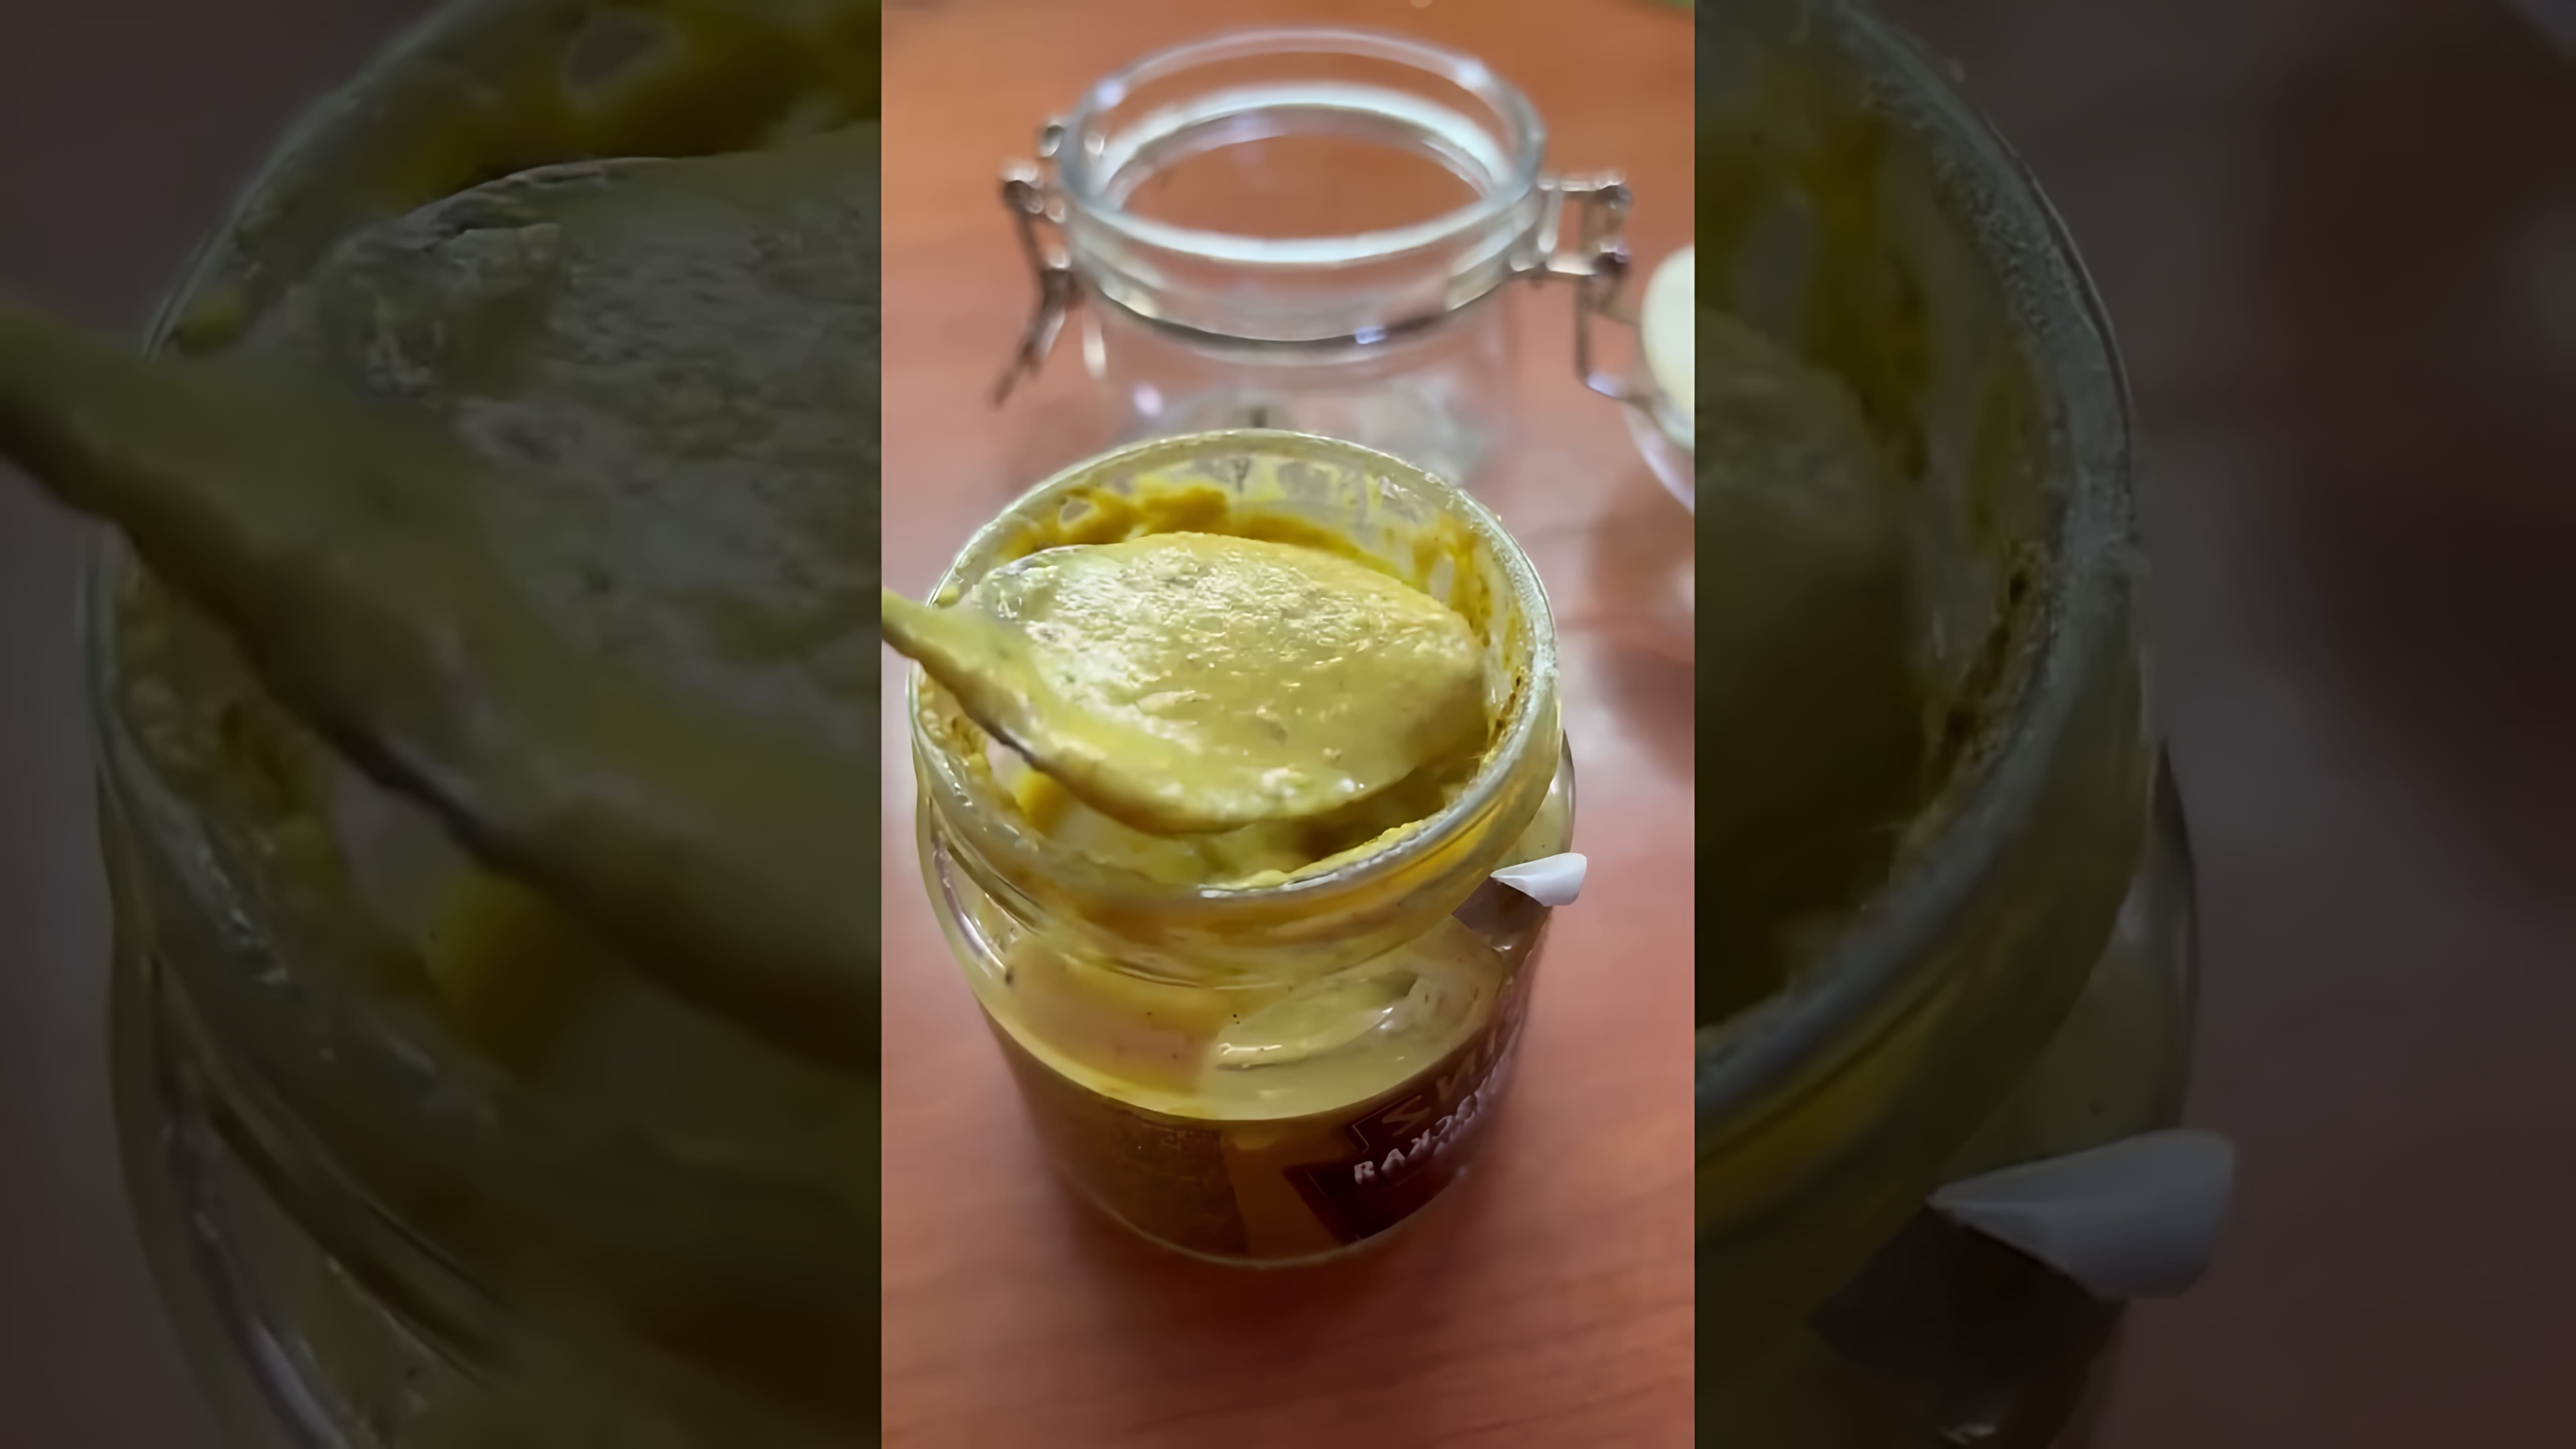 В этом видео демонстрируется рецепт приготовления горчицы в домашних условиях